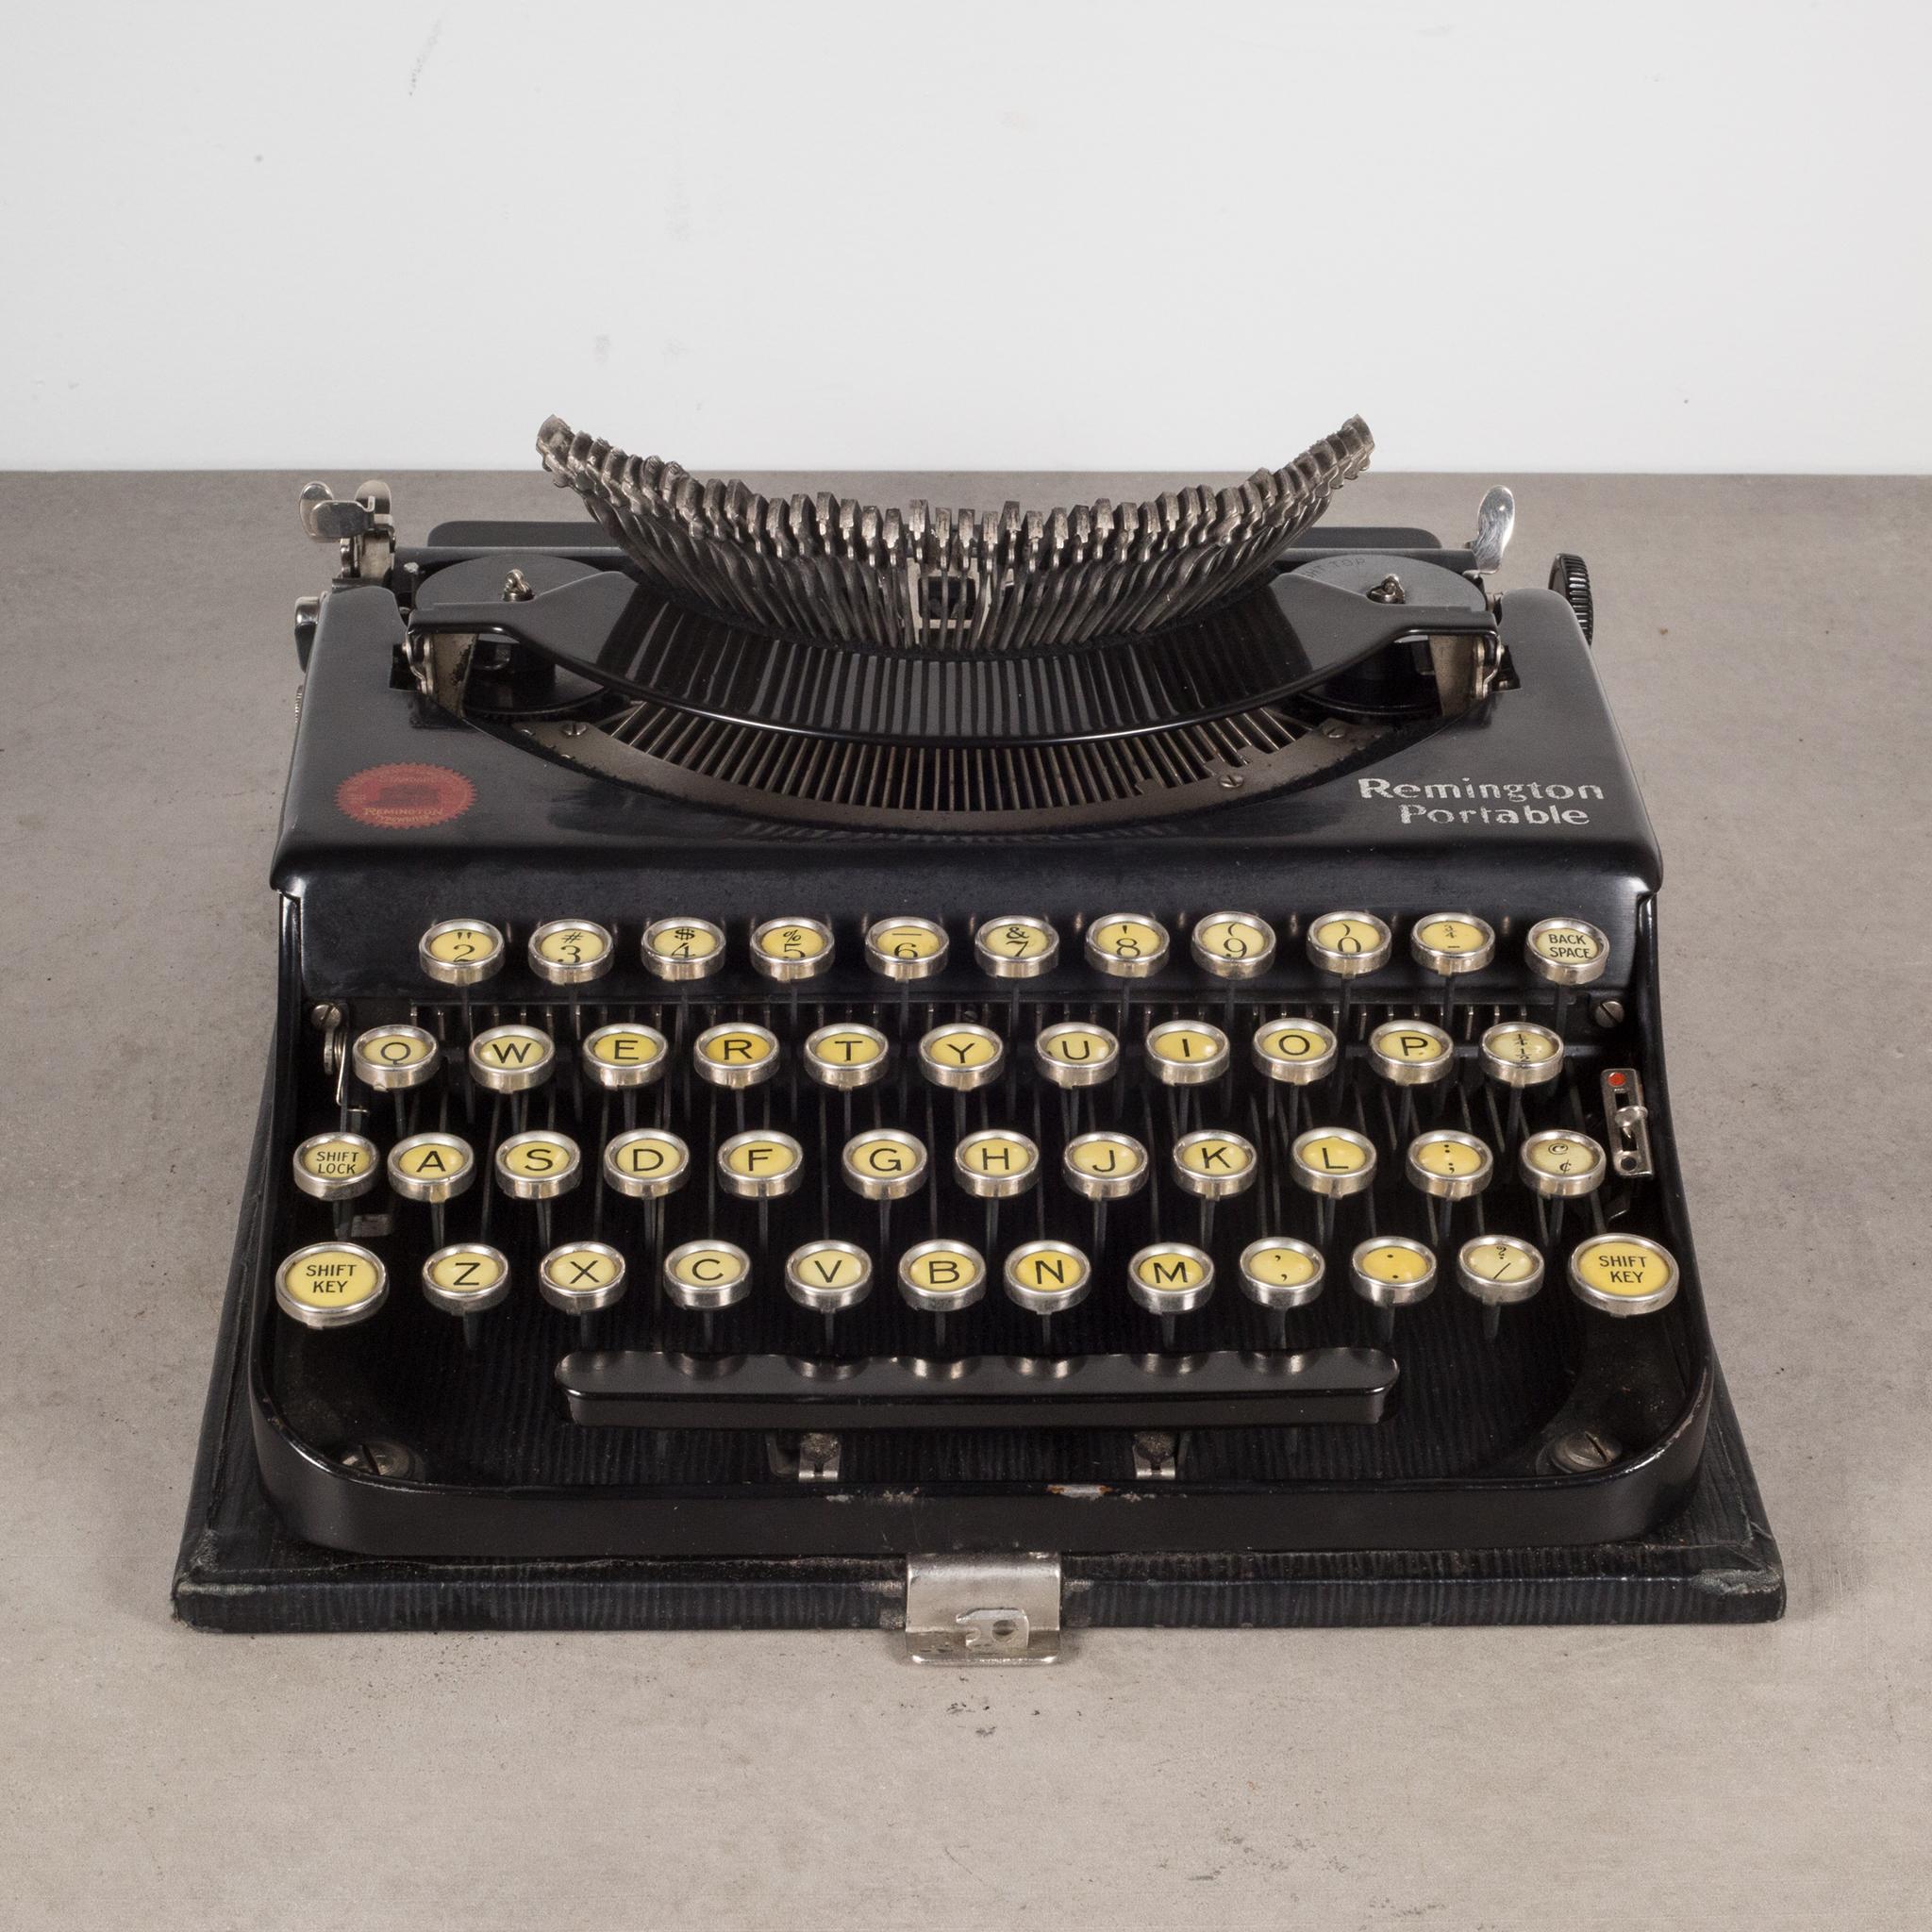 1920 remington portable typewriter value